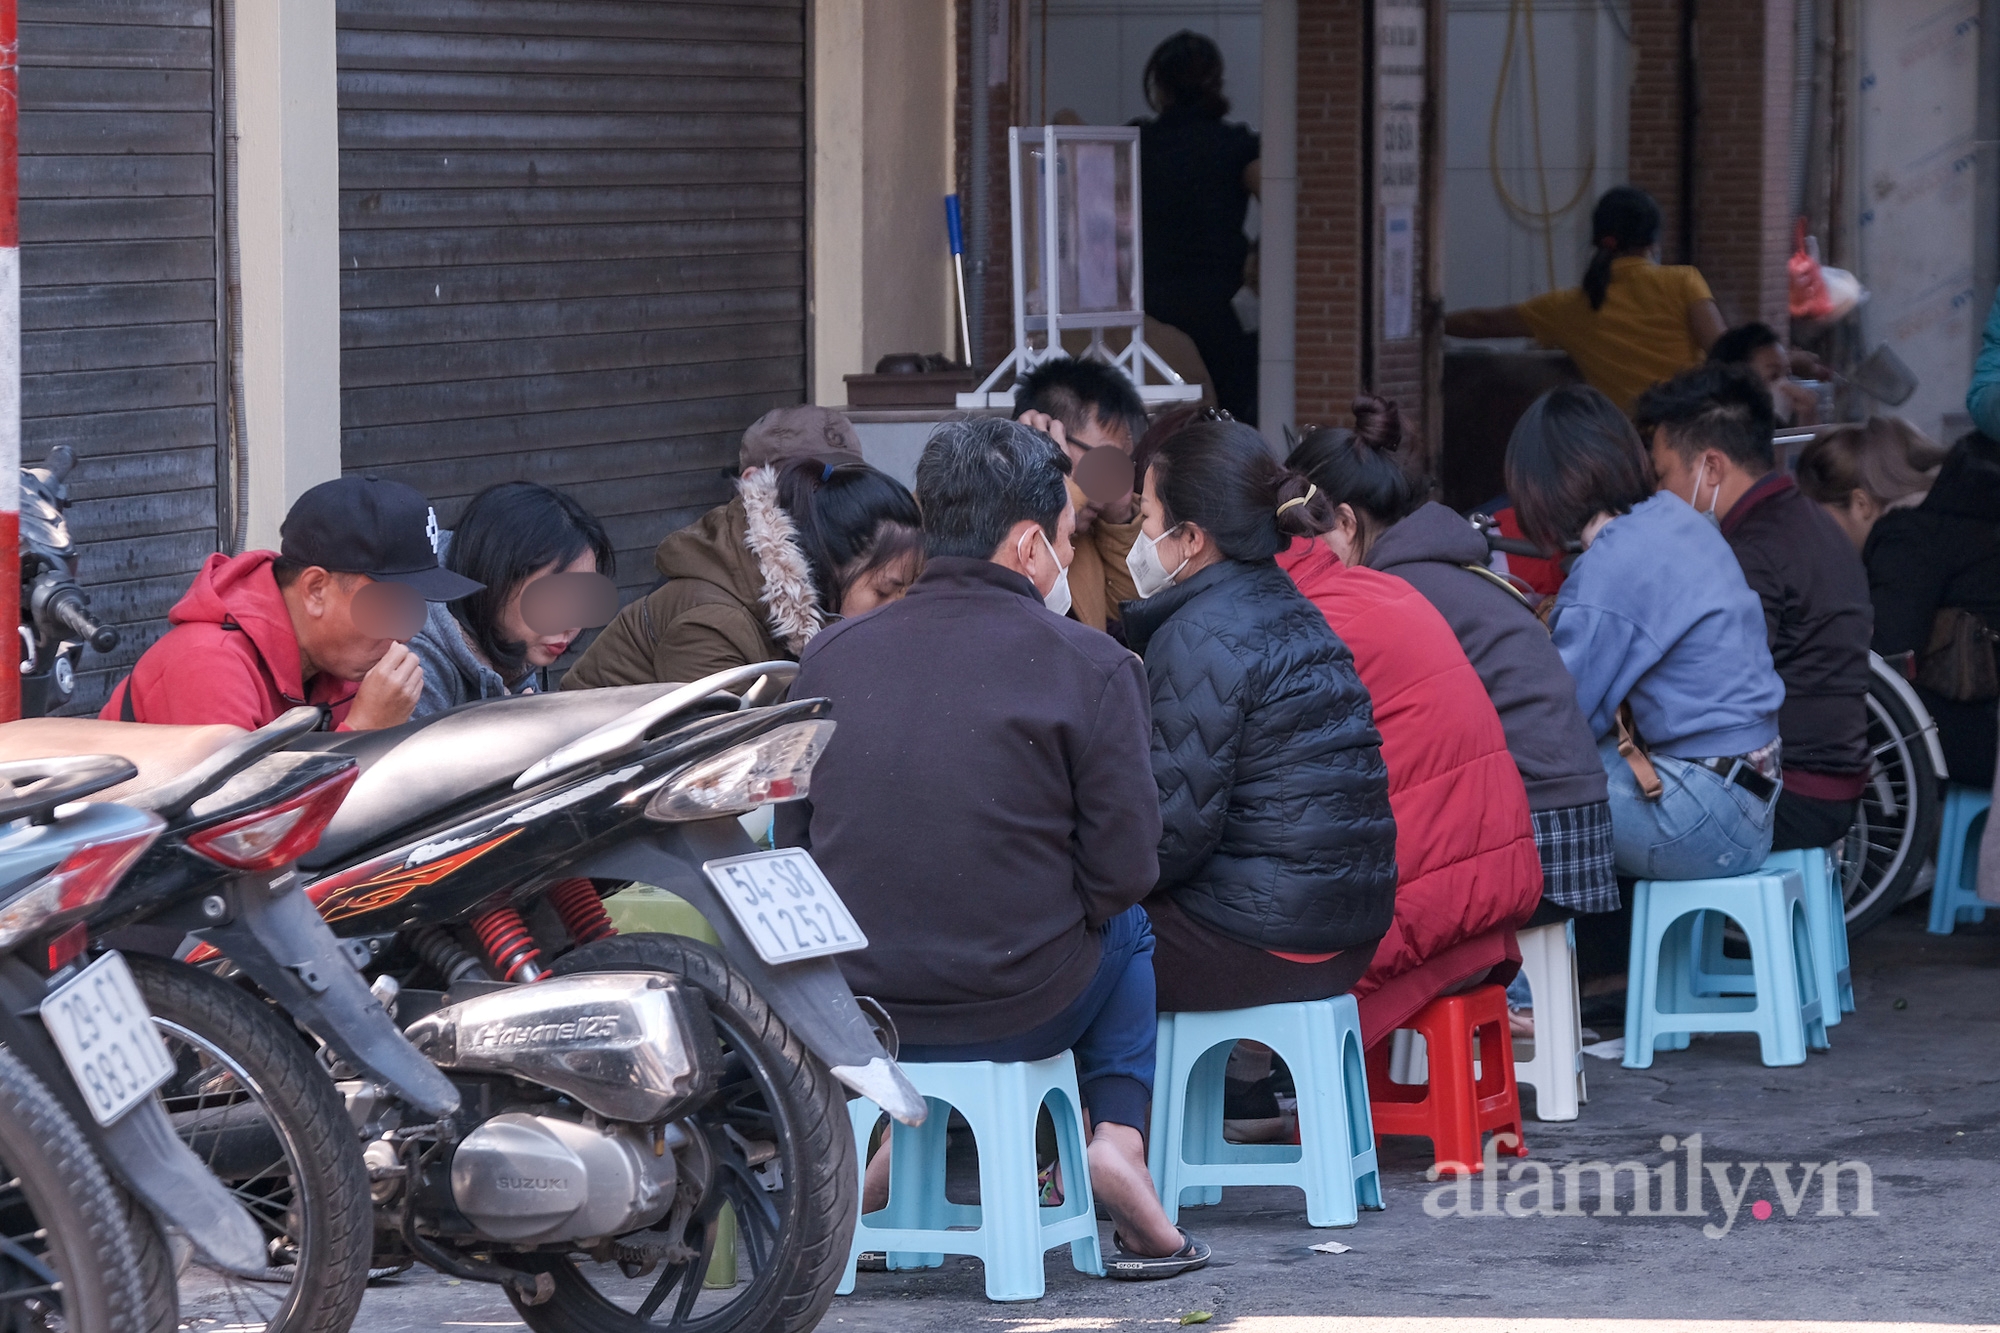 Ảnh: Hàng ăn uống, hoạt động không thiết yếu tại 2 quận trung tâm Hà Nội trước giờ tạm dừng - Ảnh 6.